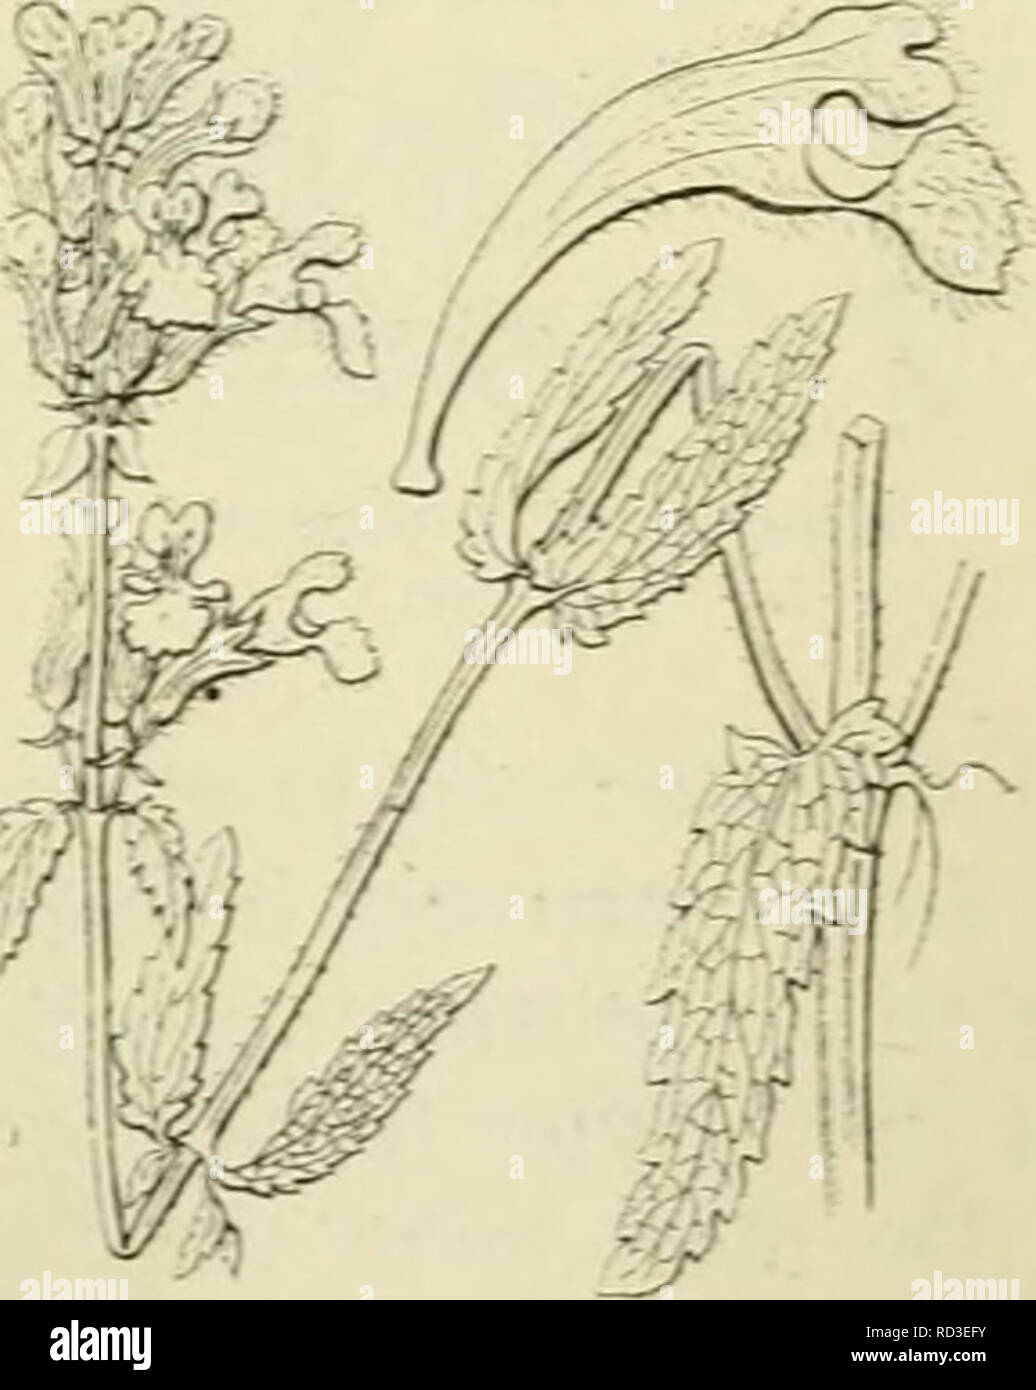 . De flora van Nederland. Plants. Nepeta Cataria Fig. 262. /.acht behaard, is eirond, weinig gekromd en draagt lancetvorrnige, prieni- vormig toegespitste, bijna gelijke tanden. De bloemkroon (fig. 262) is vrij klein, behaard, steekt 3-4 niM buiten de keel van den kelk uit. Zij is geelachtig-vvit of rood- achtig-wit. de onderlip is voorzien van purper- kleurige puntjes. De kroonbuis is in den kelk ingesloten en plotseling aan de keel verwijd, de bovenlip is vlak, recht, tweespletig, de onderlip is 3-Iobbig met een uitgeholde, aan den voet sterk samengetrokken, bijna cirkelvormige midden- lob e Stock Photo